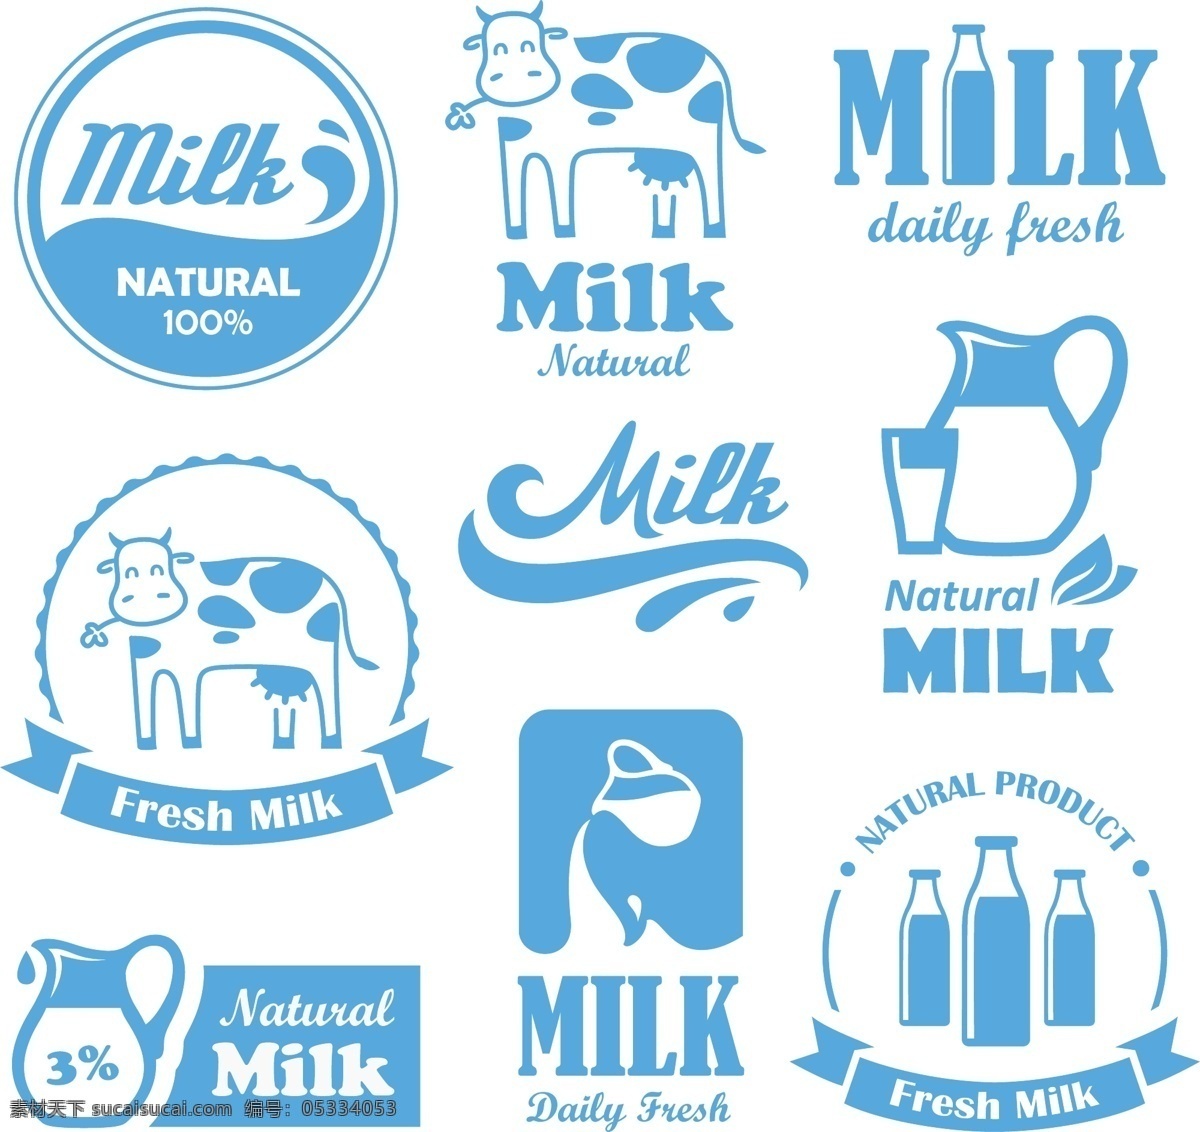 卡通 牛奶 图标 矢量 模板下载 标签 标志 奶牛 牛 瓶子 图标设计 矢量图标 标志图标 矢量素材 白色